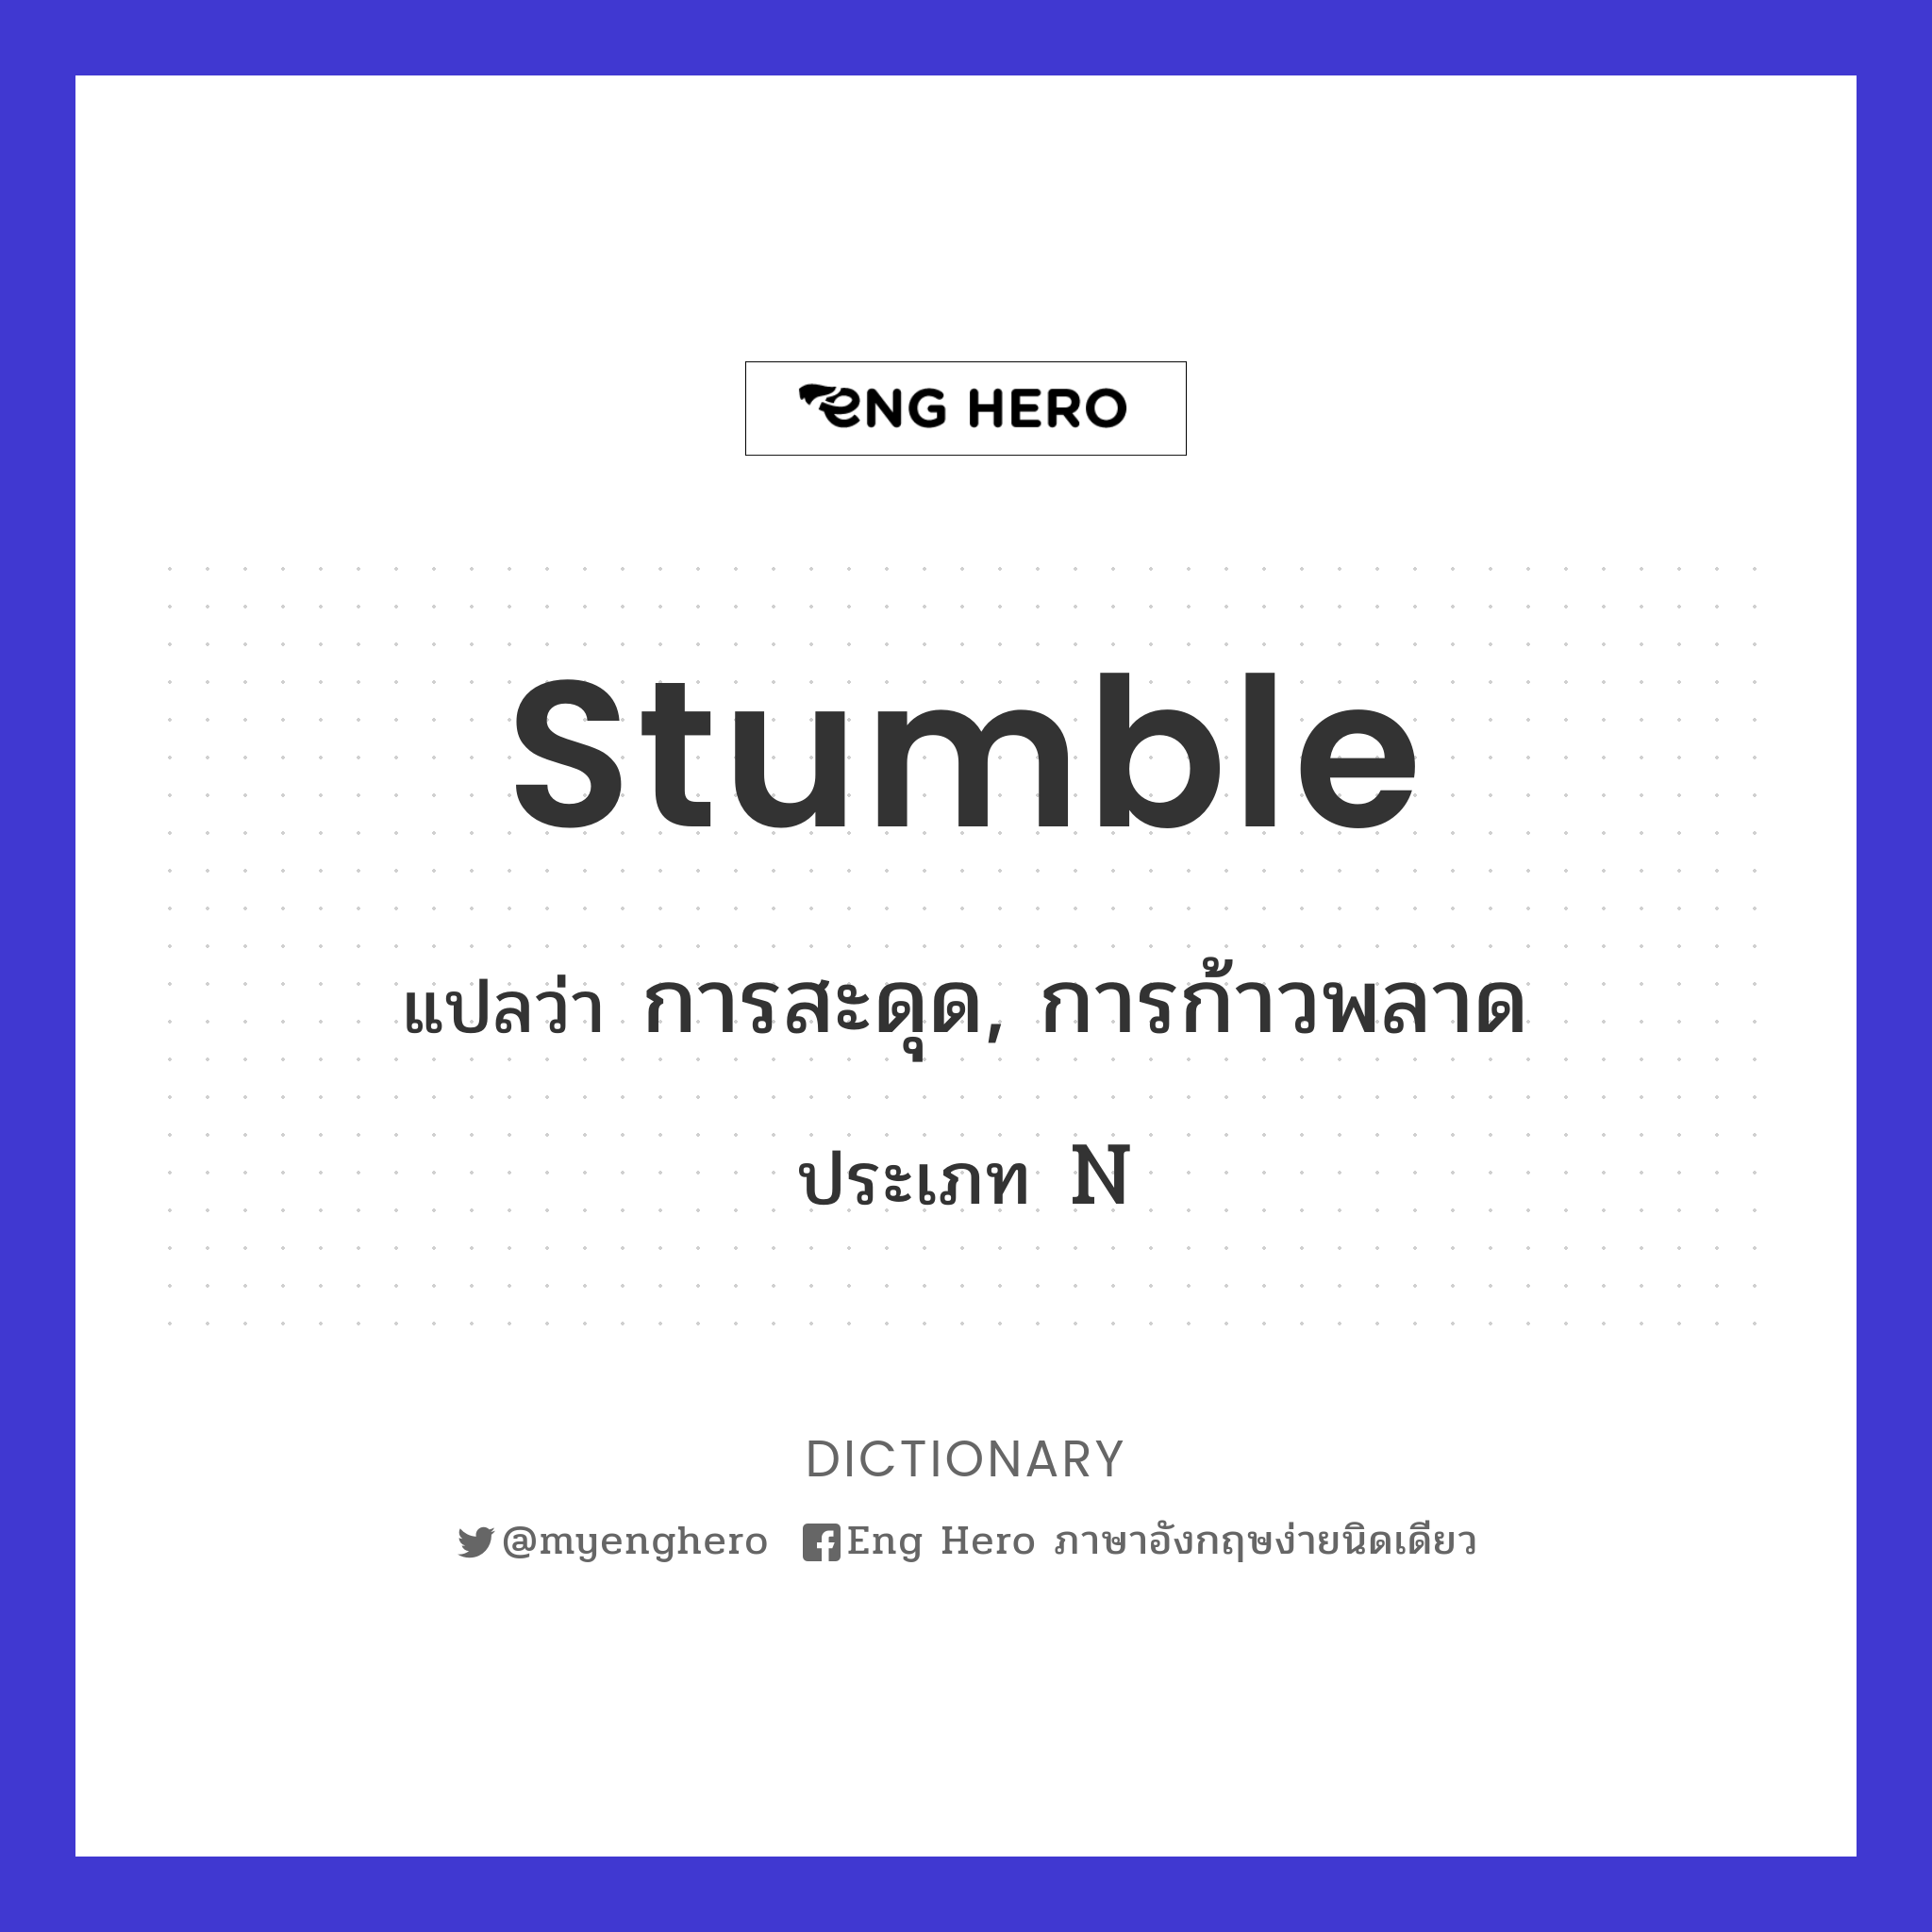 stumble